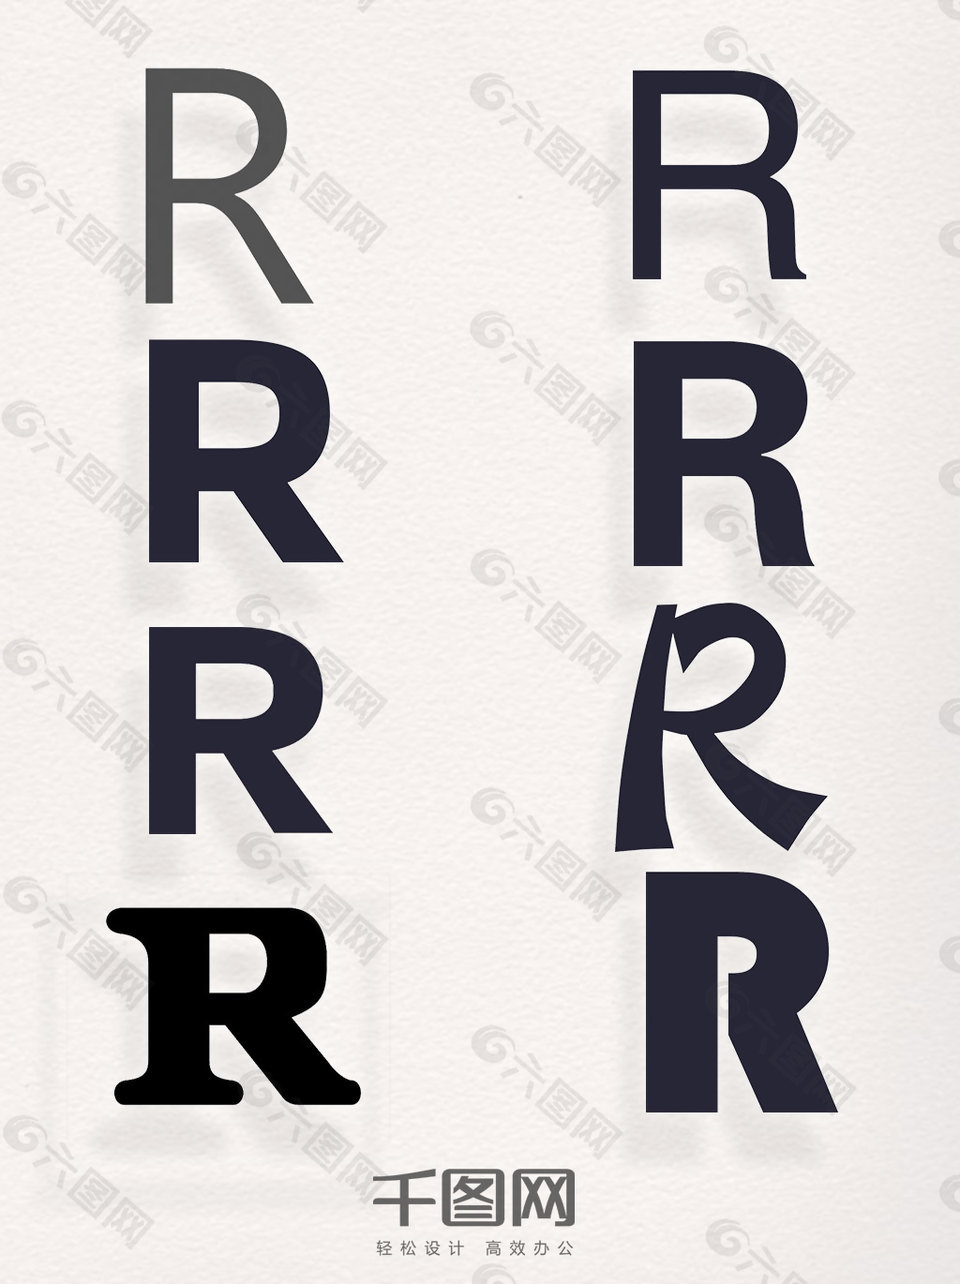 单色商标R字母素材创意元素装饰图案集合